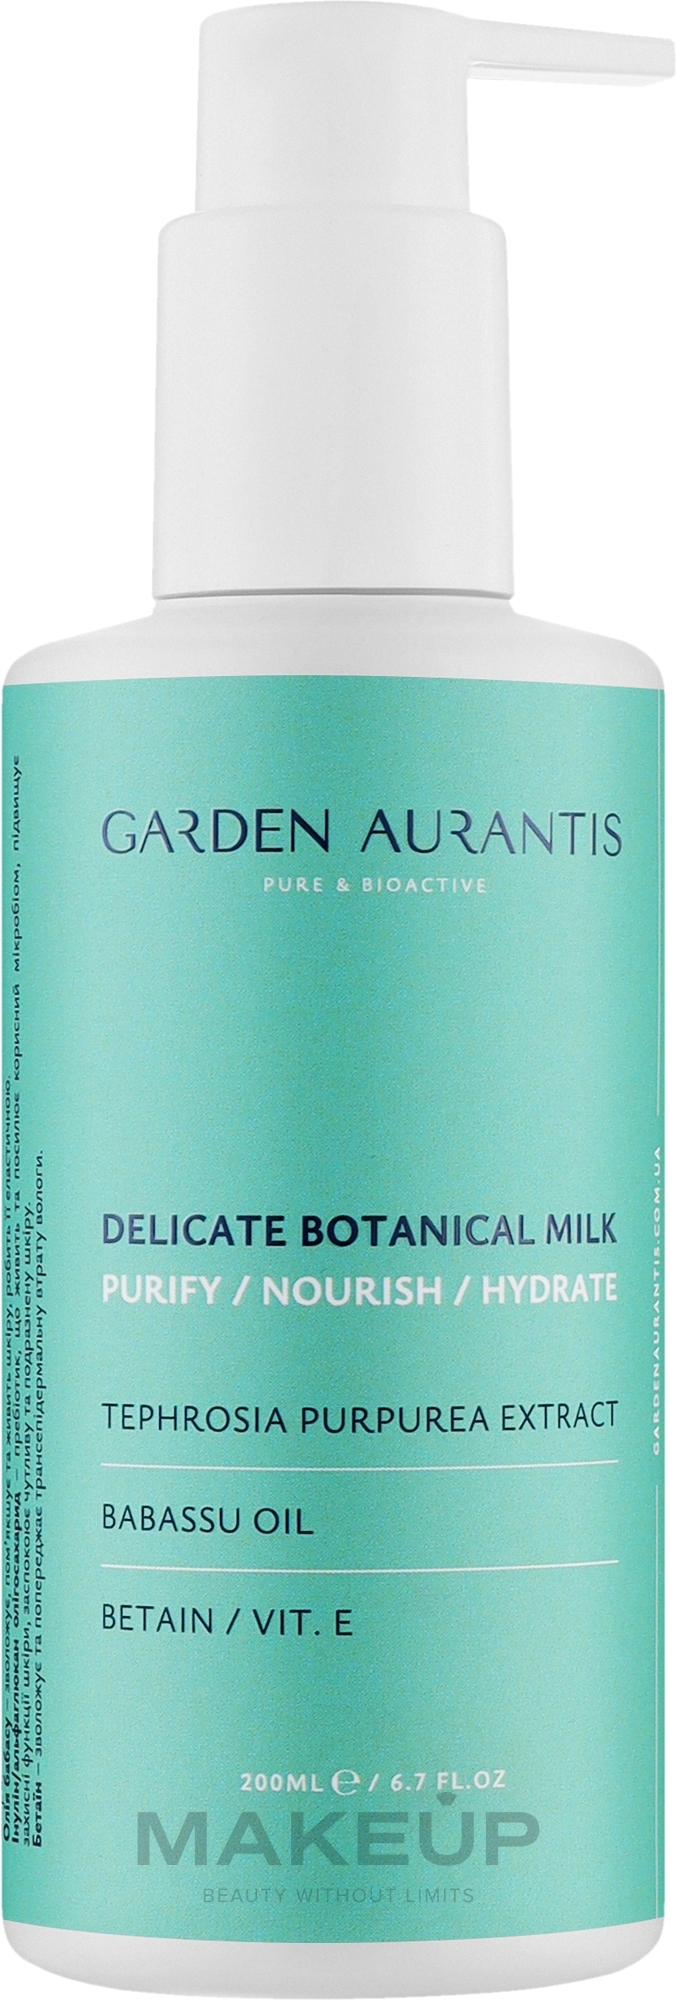 Ніжне молочко для очищення шкіри - Garden Aurantis Delicate Botanical Milk — фото 200ml